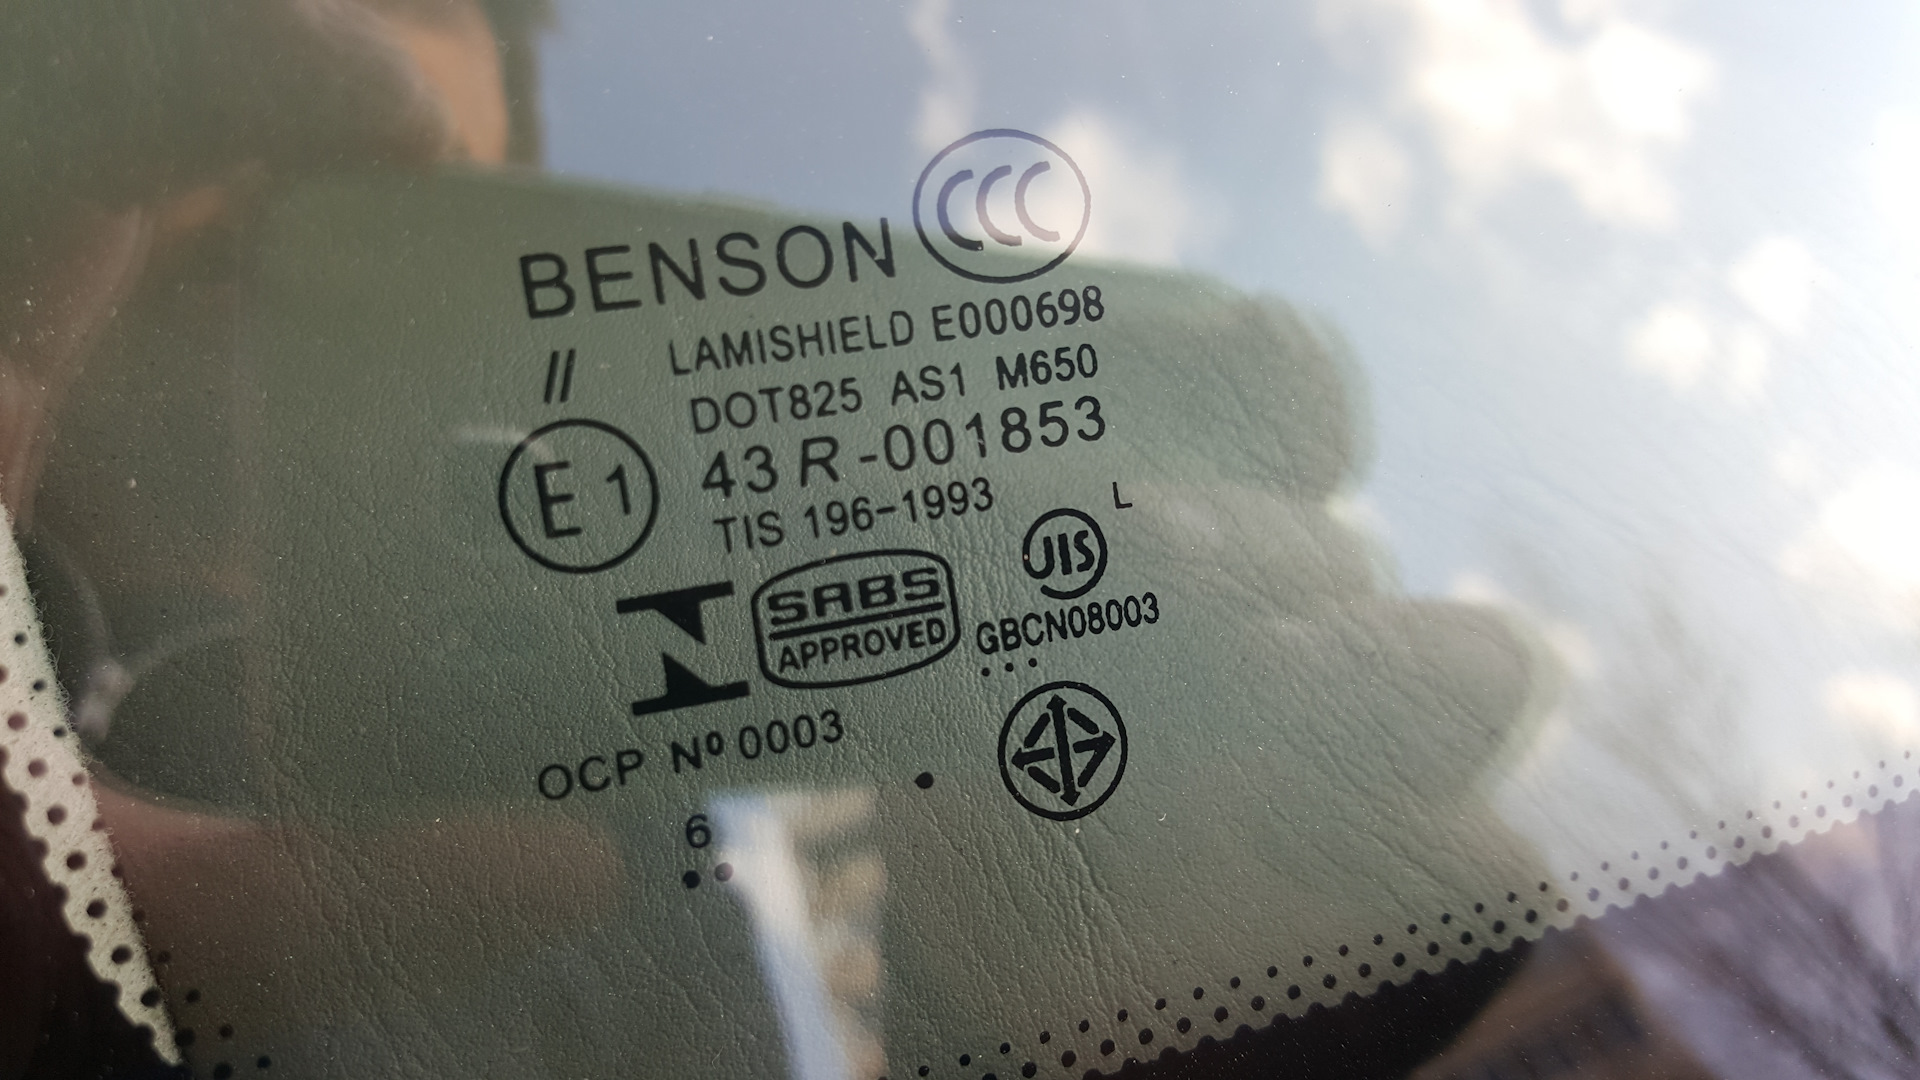 Xyg стекло производитель. Benson лобовое стекло 08003. Лобовое стекло Benson маркировка. XYG gs12lcpshlfwhx. Маркировка на лобовом стекле.